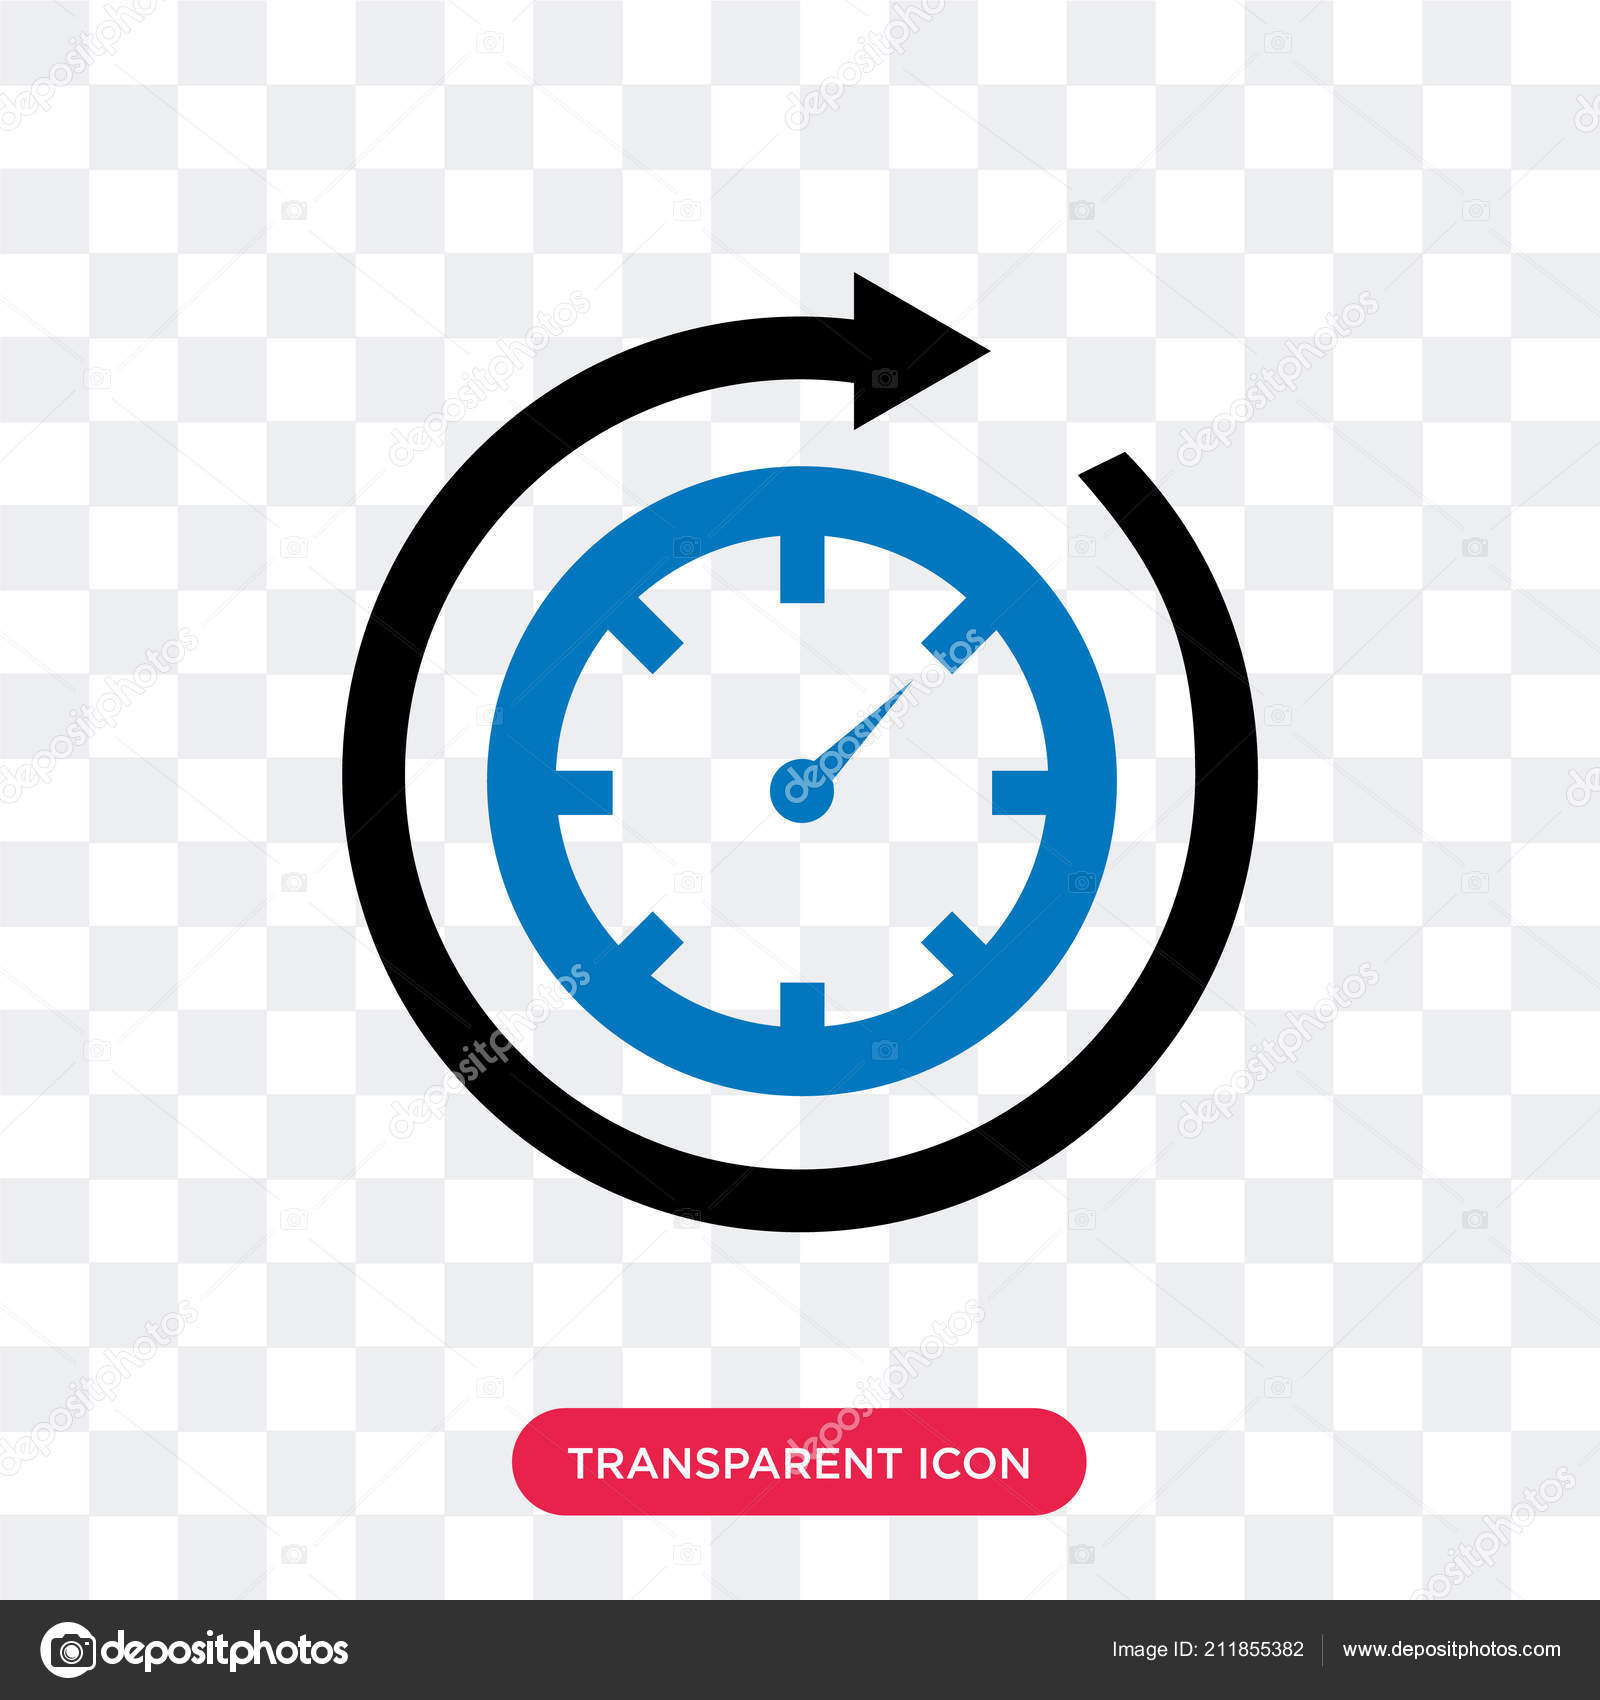 Icon đếm thời gian rất hữu ích trong việc thể hiện sự chuyển động và tiến triển của mọi thứ. Hãy xem hình ảnh để cảm nhận được sự tiện lợi và độc đáo của icon này.